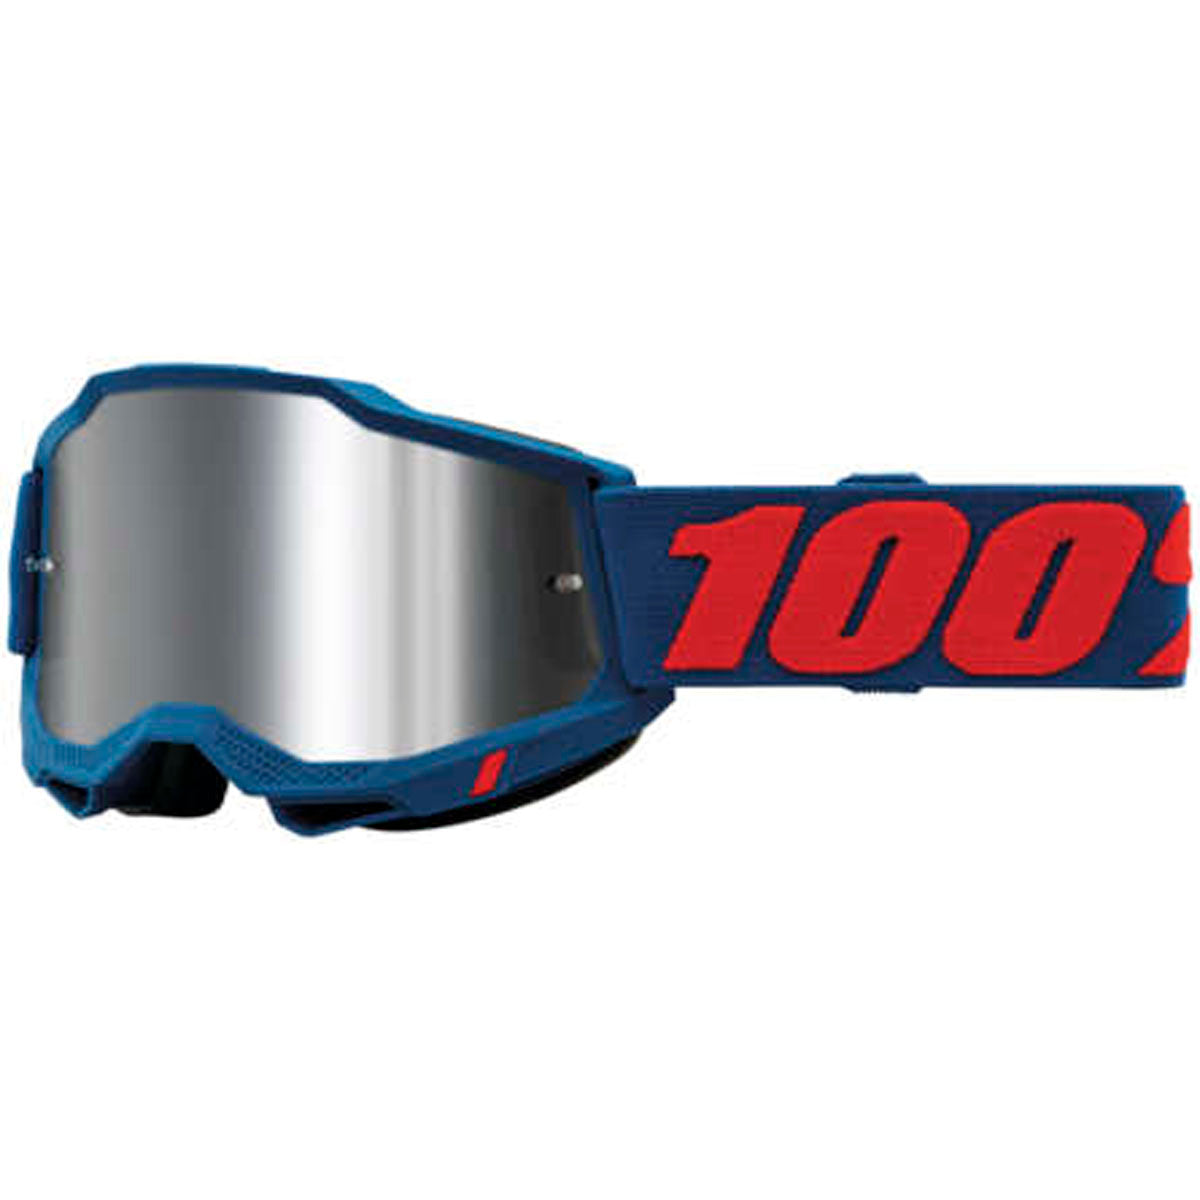 100% Accuri 2 Goggles Odeon / Flash Silver Mirrored Lens